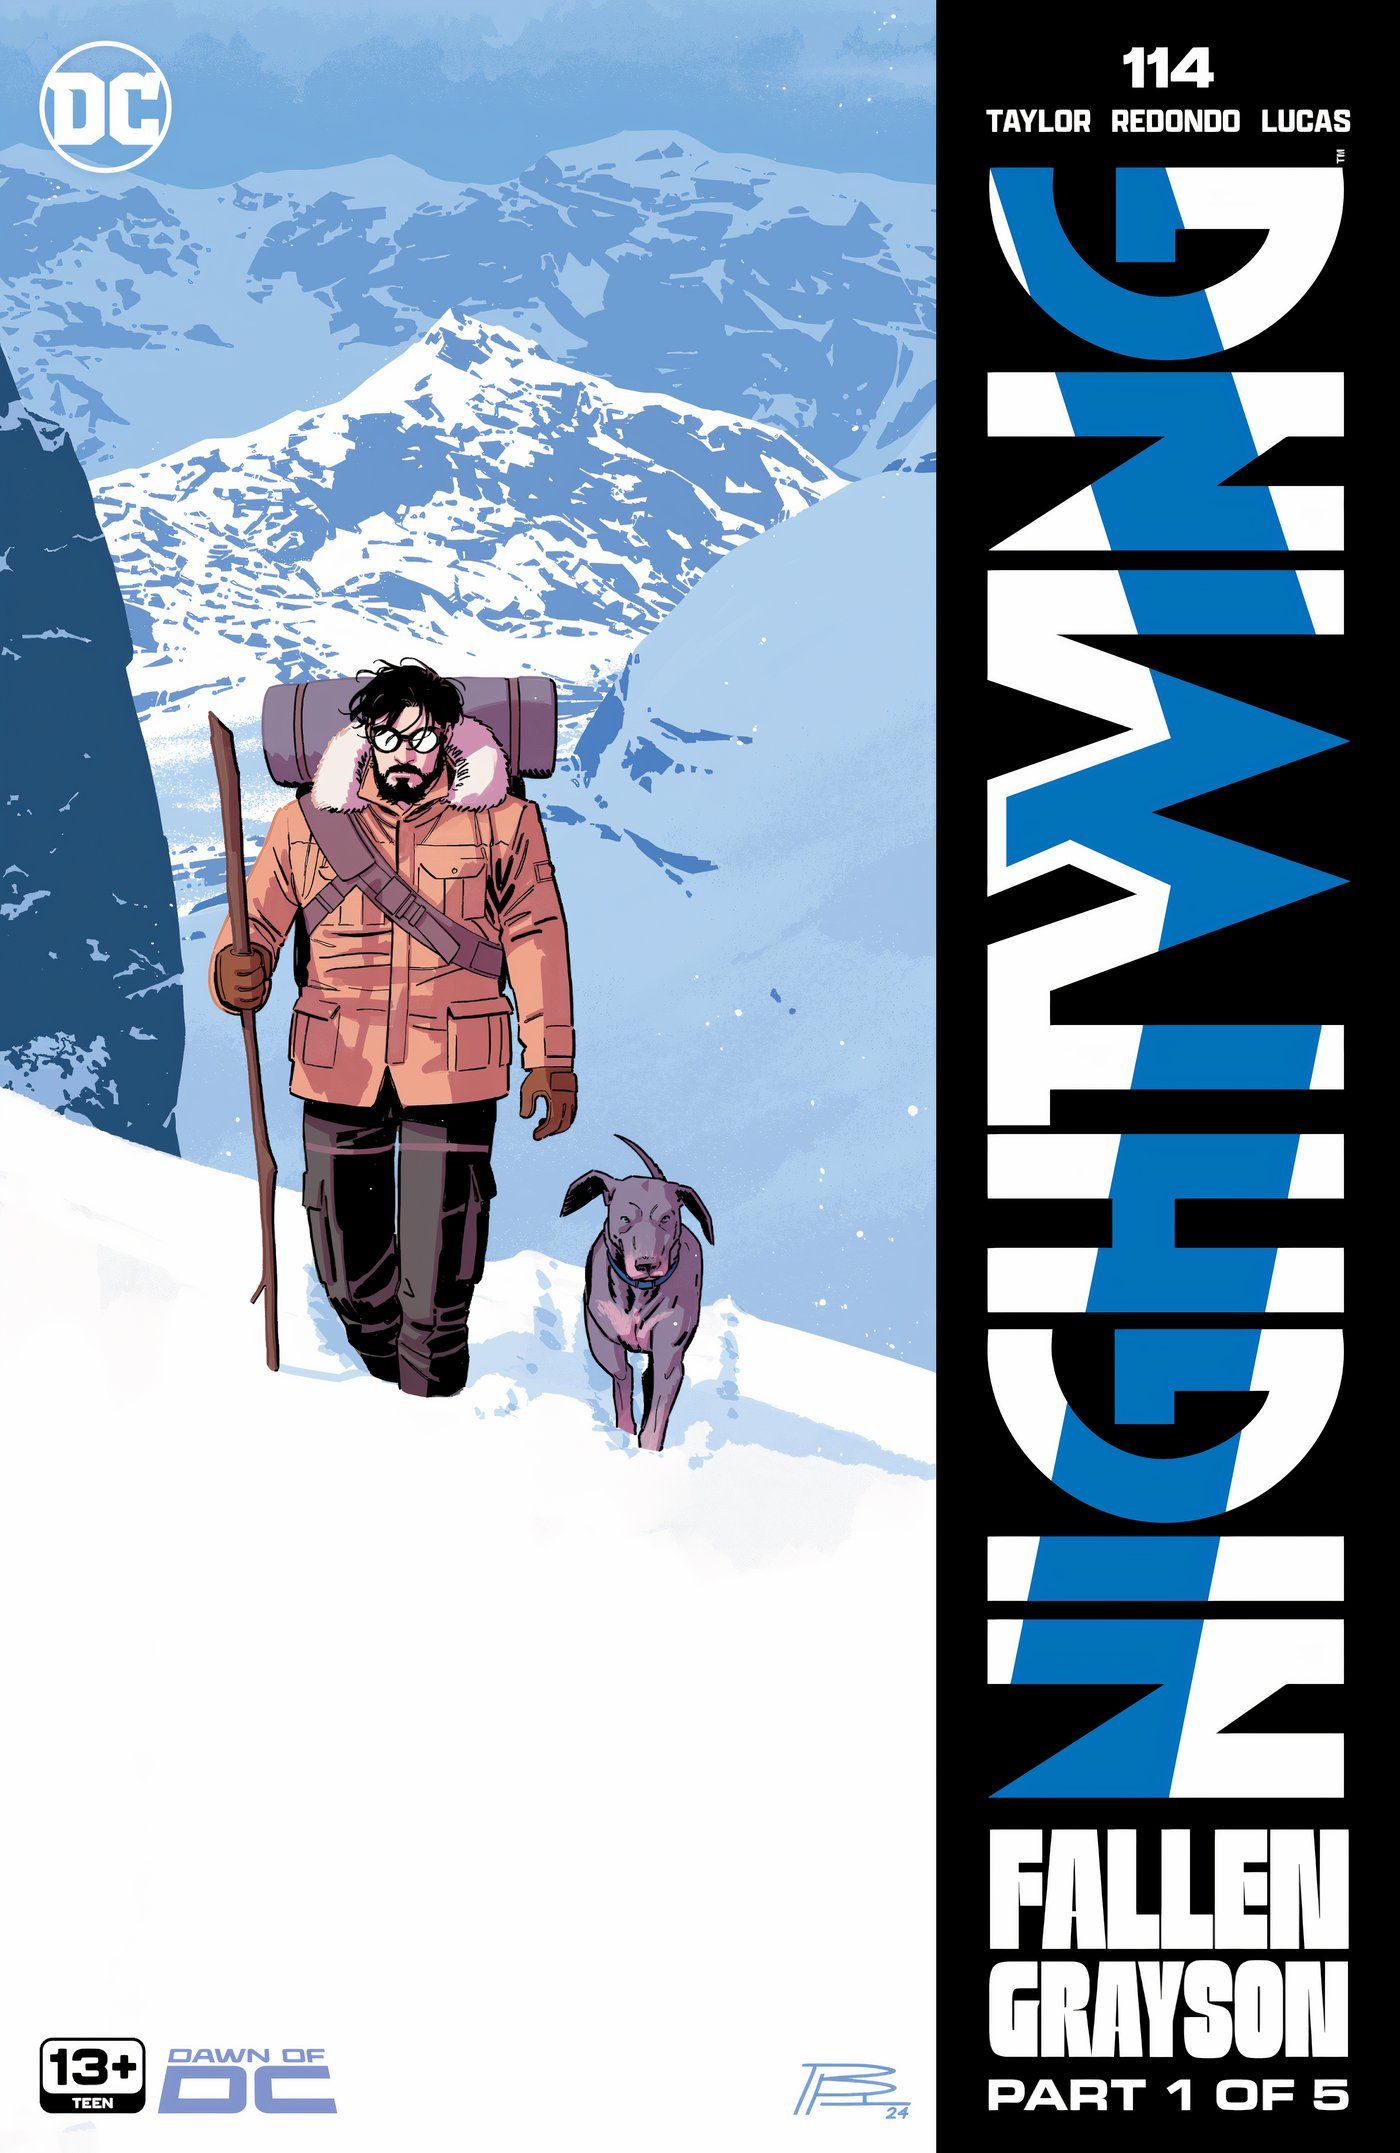 Capa principal do Nightwing 114: Dick Grayson com a cadela Haley caminhando pelas montanhas nevadas.